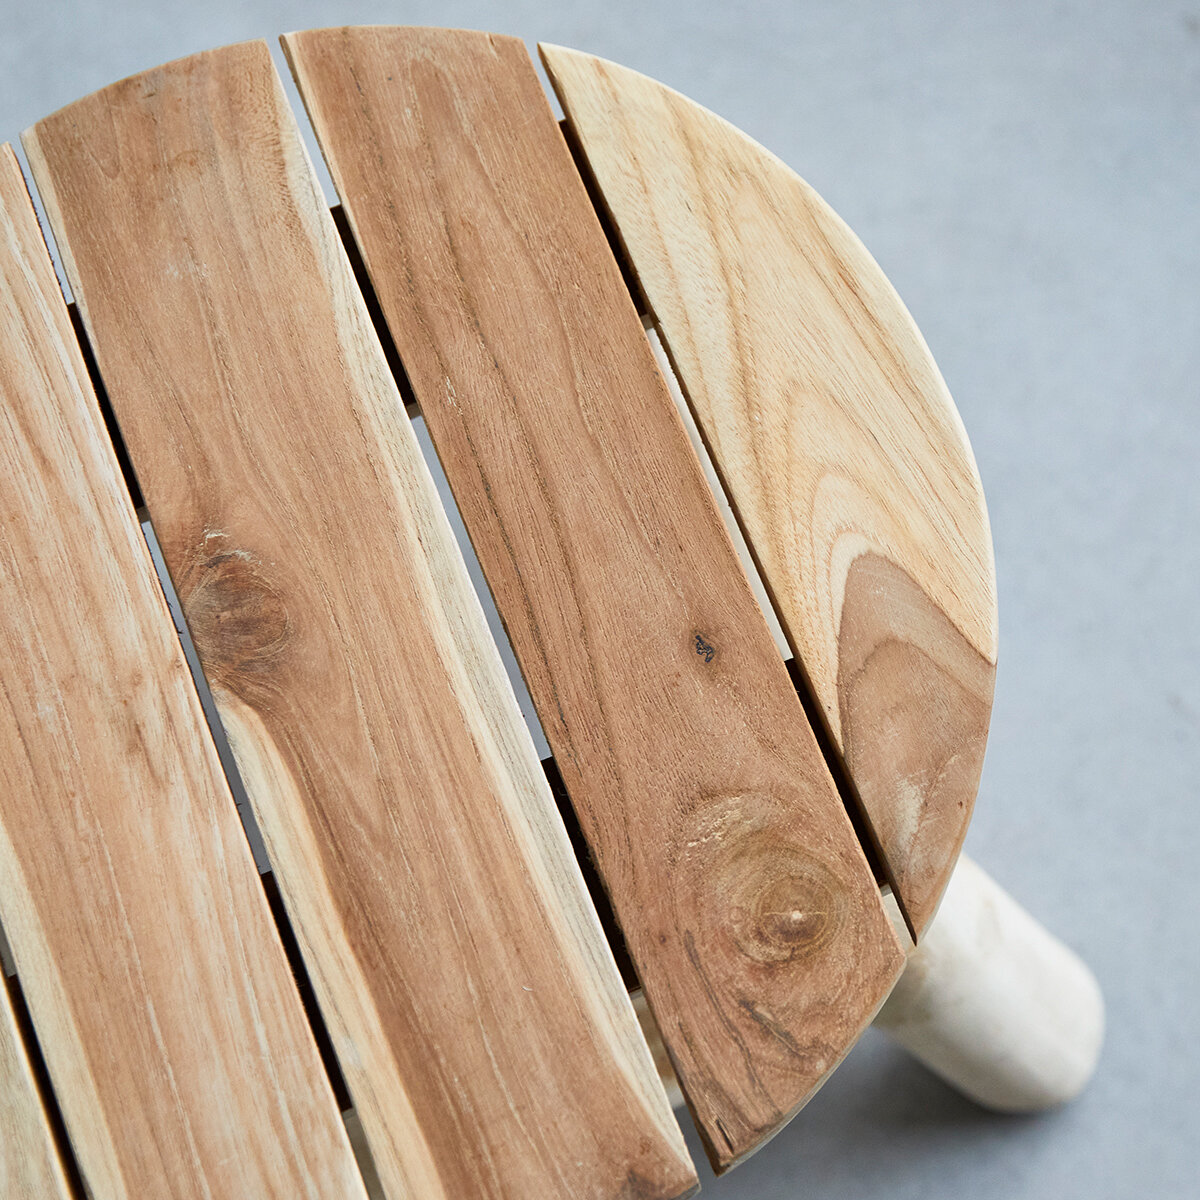 Taburete pequeño de madera perfecto como elemento para decoración